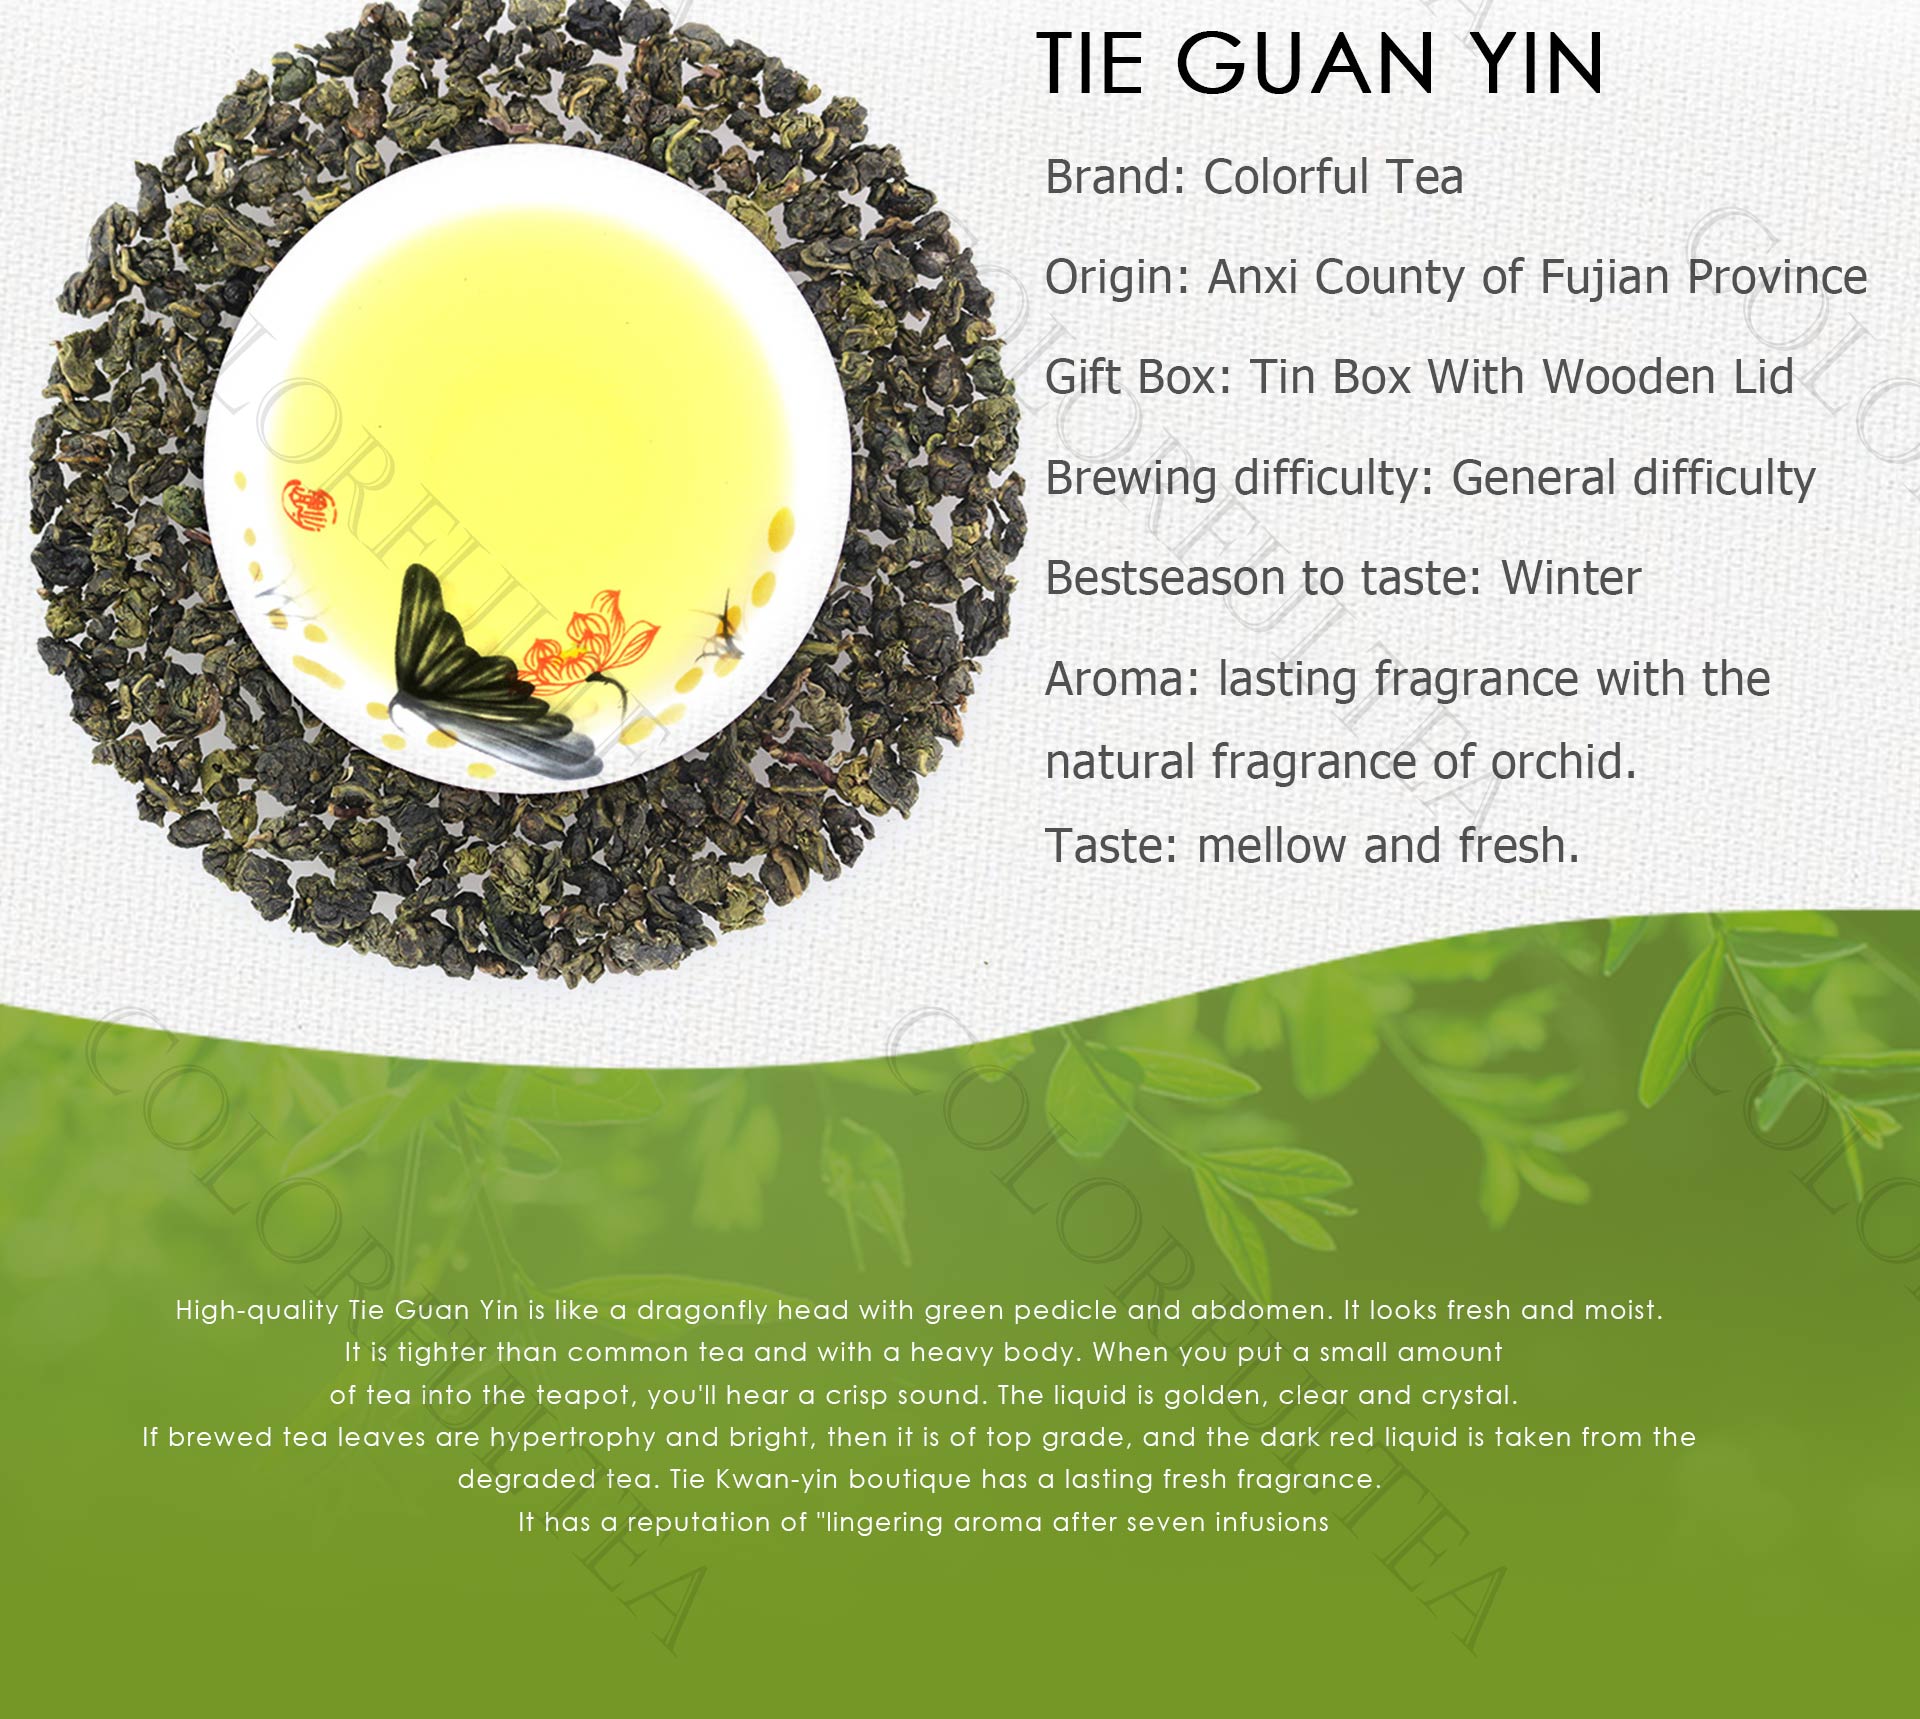 Tie Guan Yin Tea